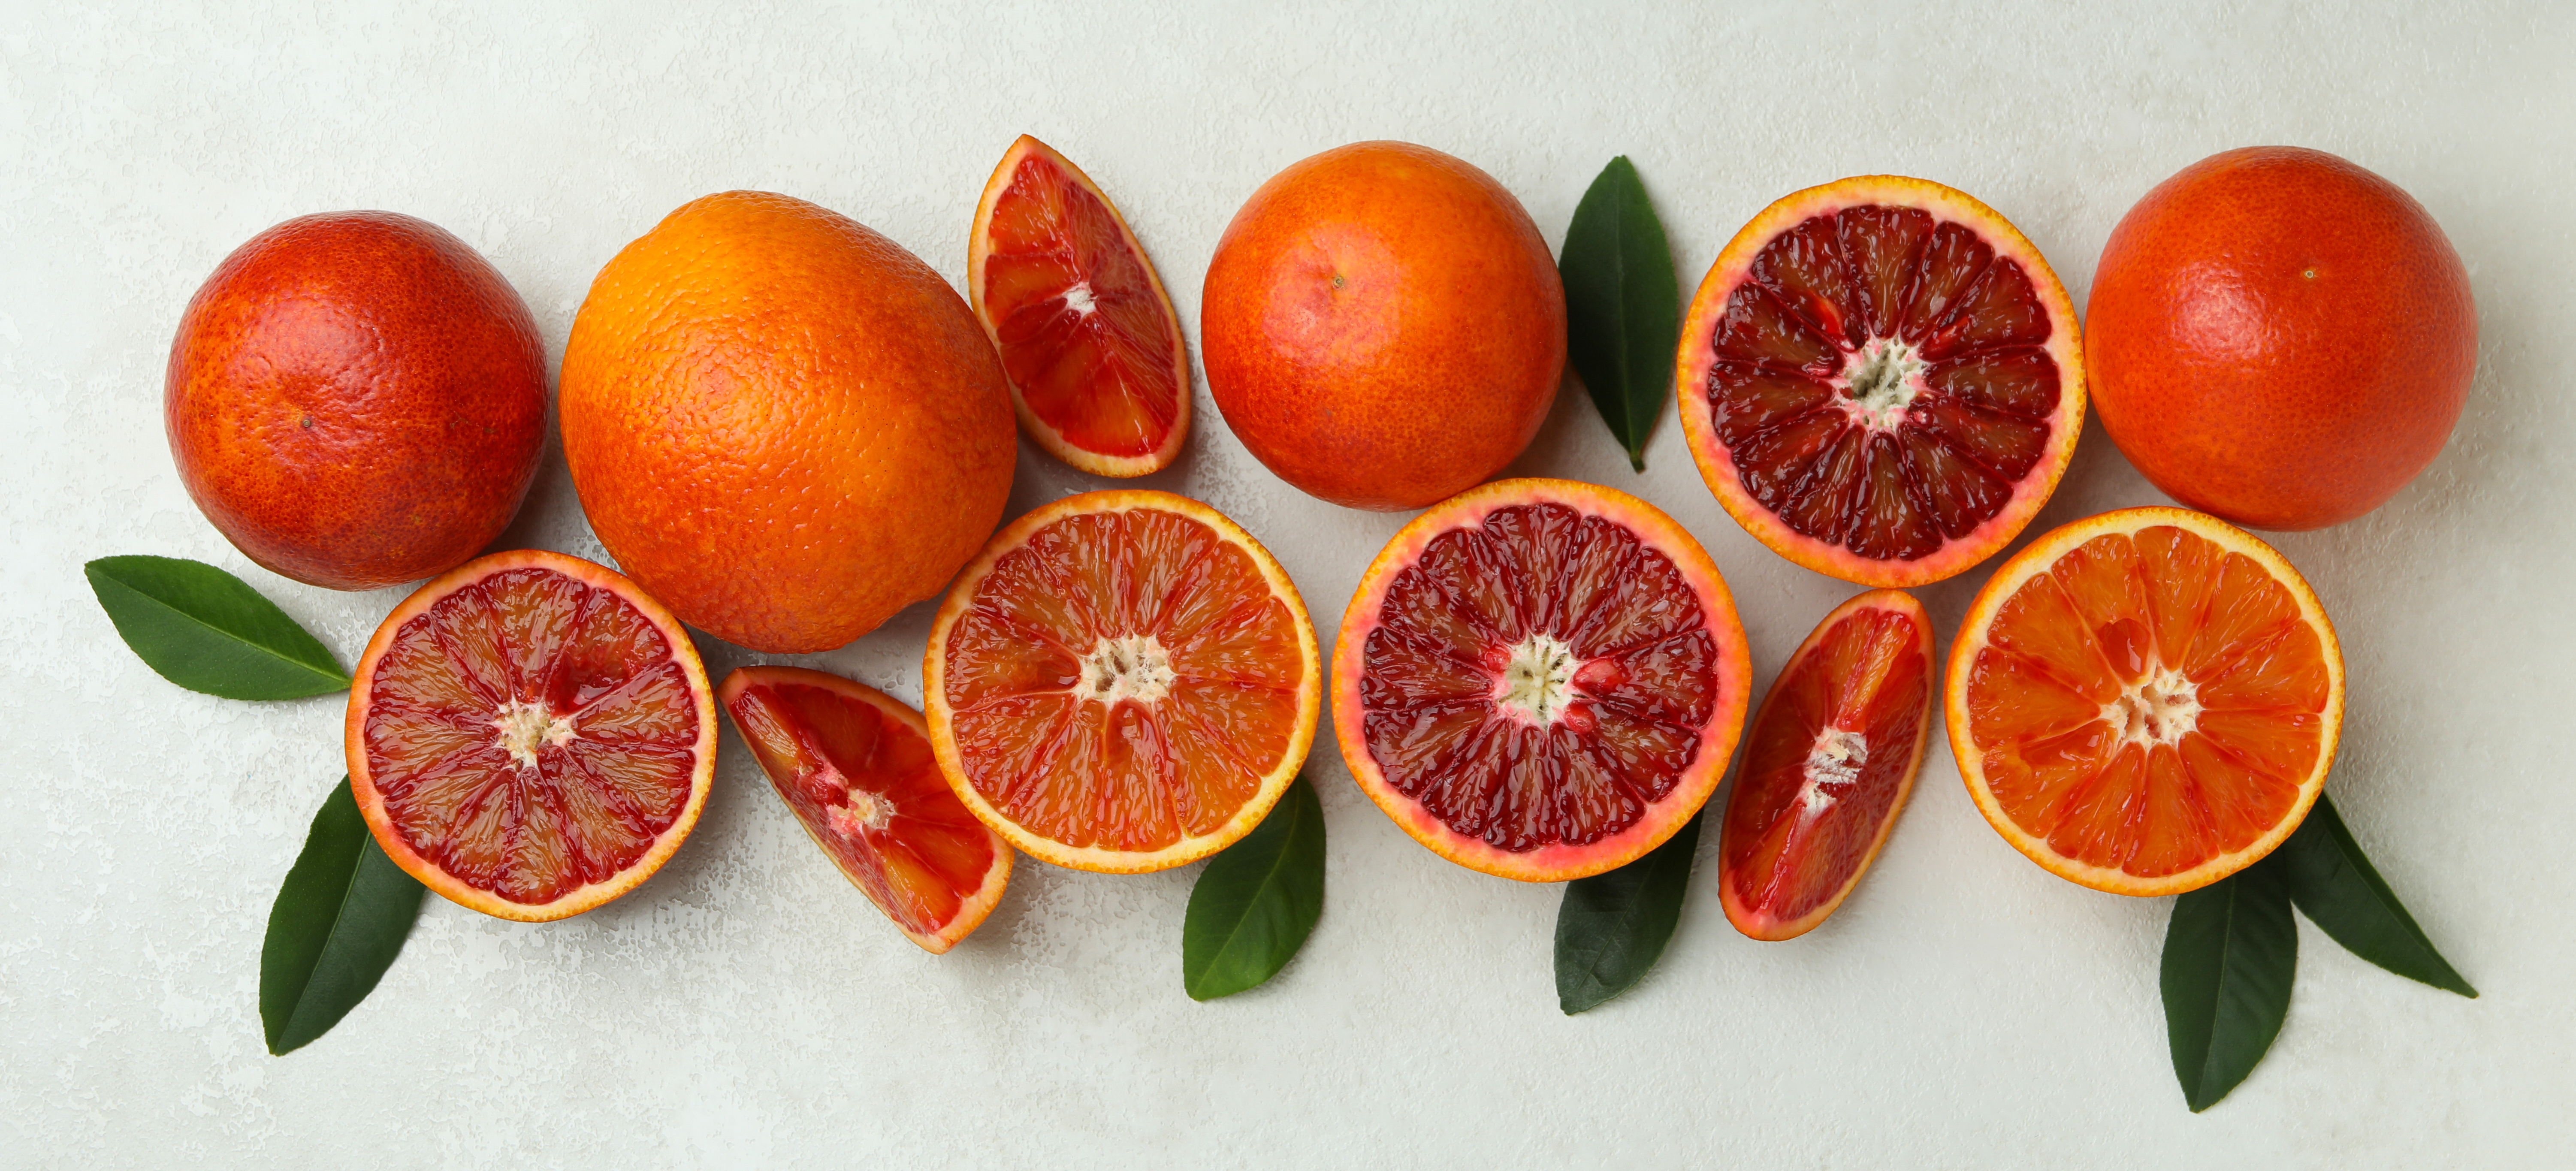 Tarocco-Orangen aus Sizilien 